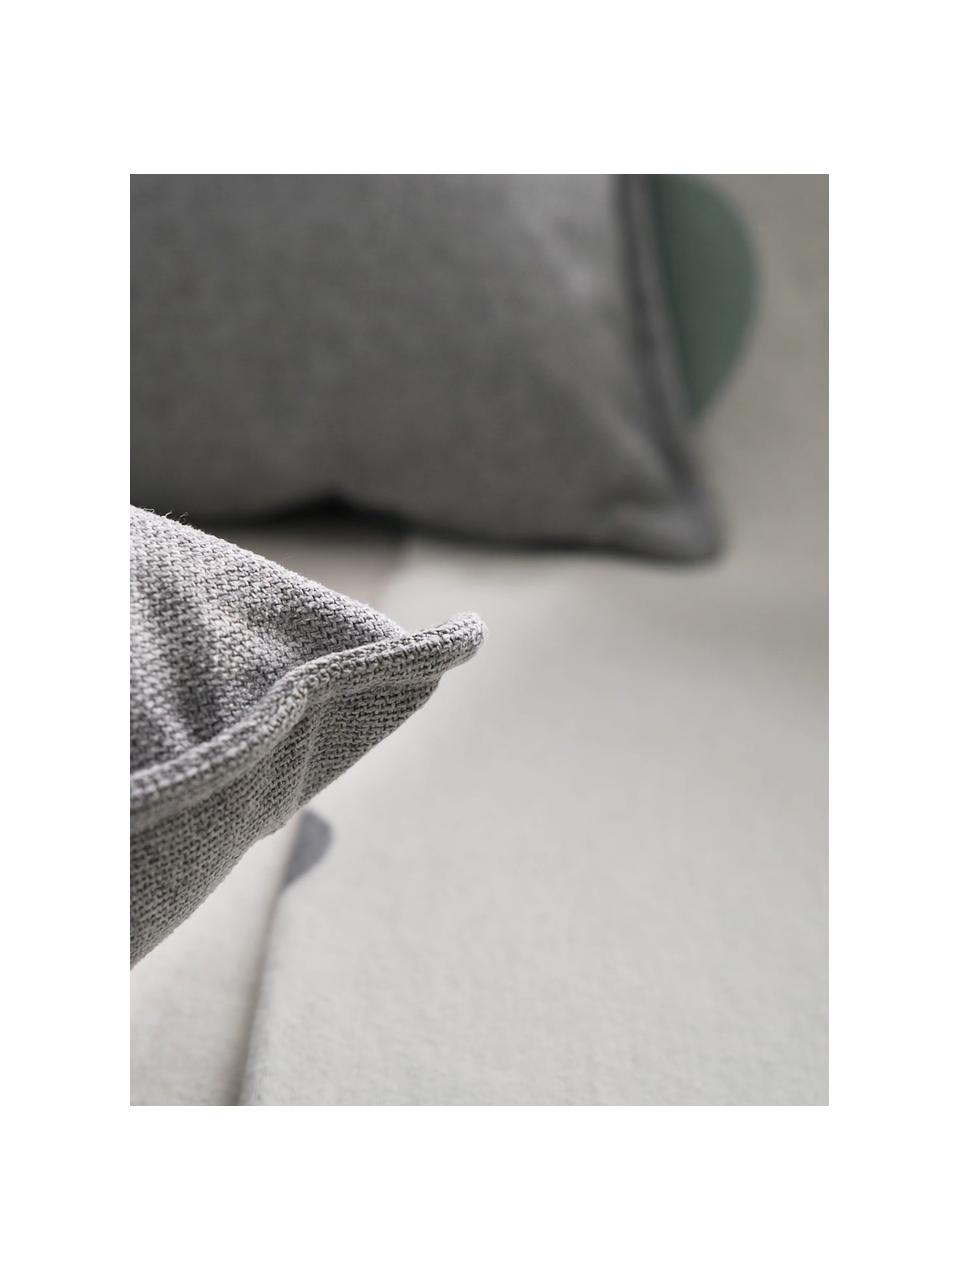 Sofa-Kissen Lennon in Hellgrau, Bezug: 100% Polyester, Webstoff Hellgrau, B 60 x L 60 cm